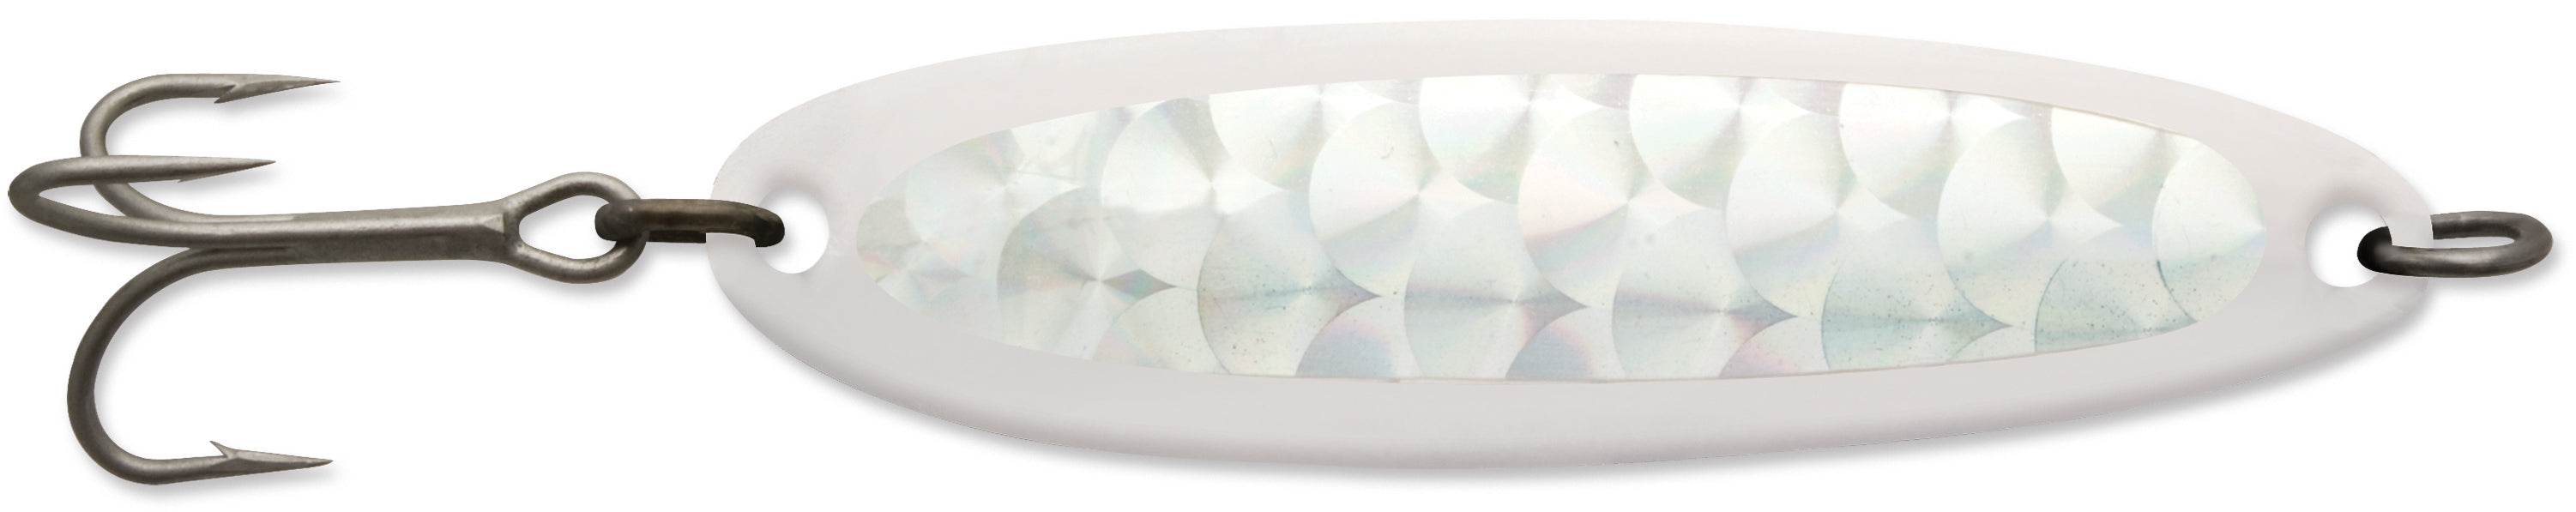 Luhr Jensen Krocodile Spoon - 1 oz - Chrome/Silver Prism-Lite